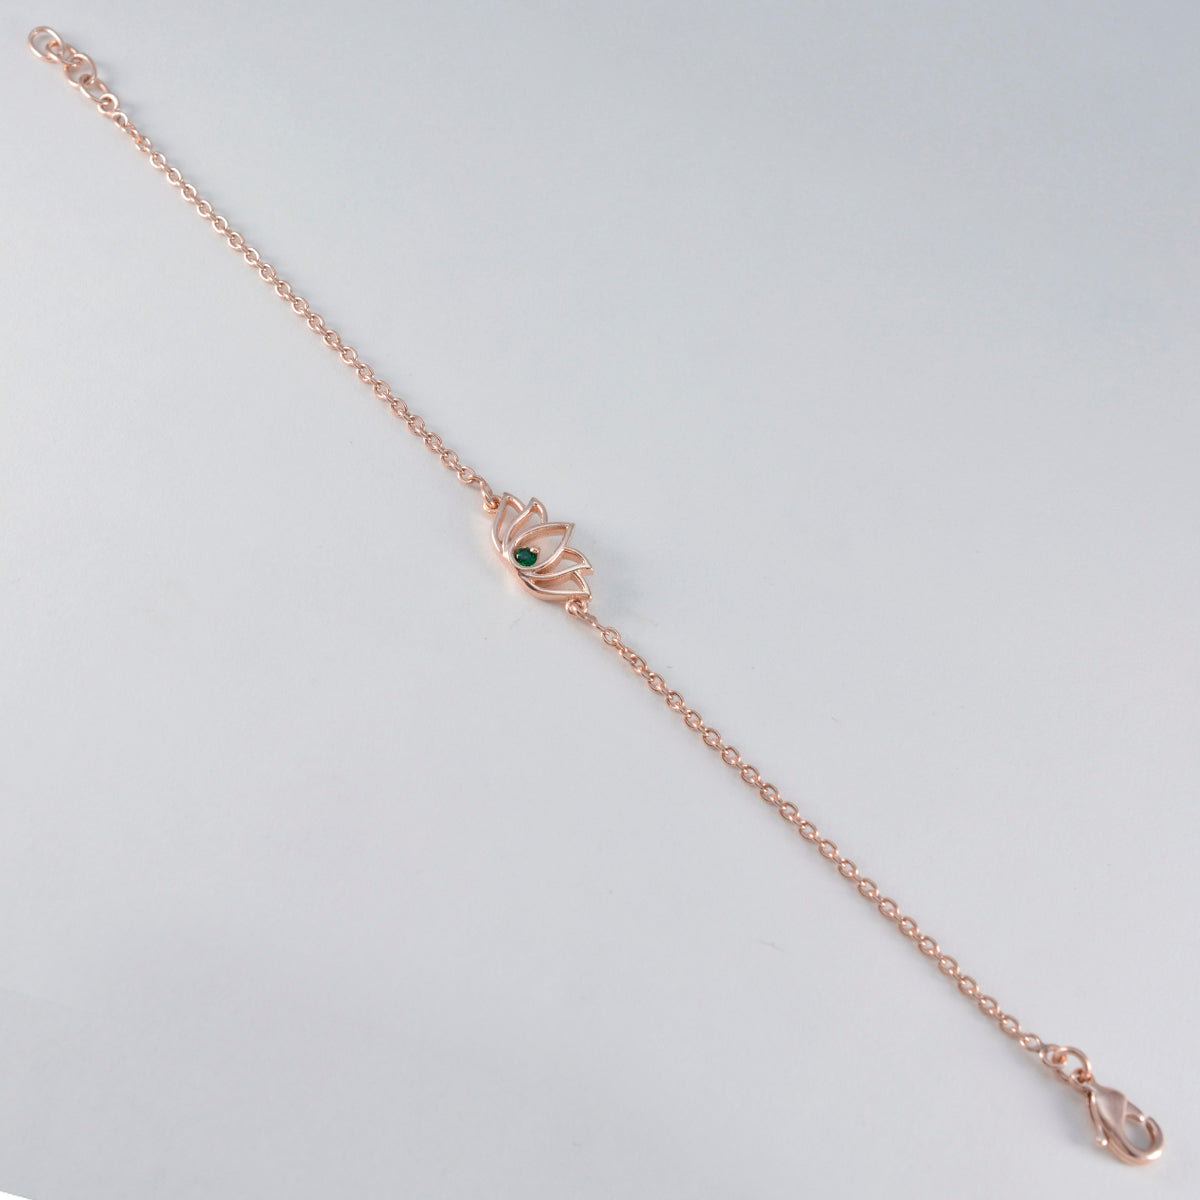 Riyo elegante 925 sterling zilver met rosévergulde armband voor dames Emerald CZ armband bezel setting armband met vishaak bedelarmband.